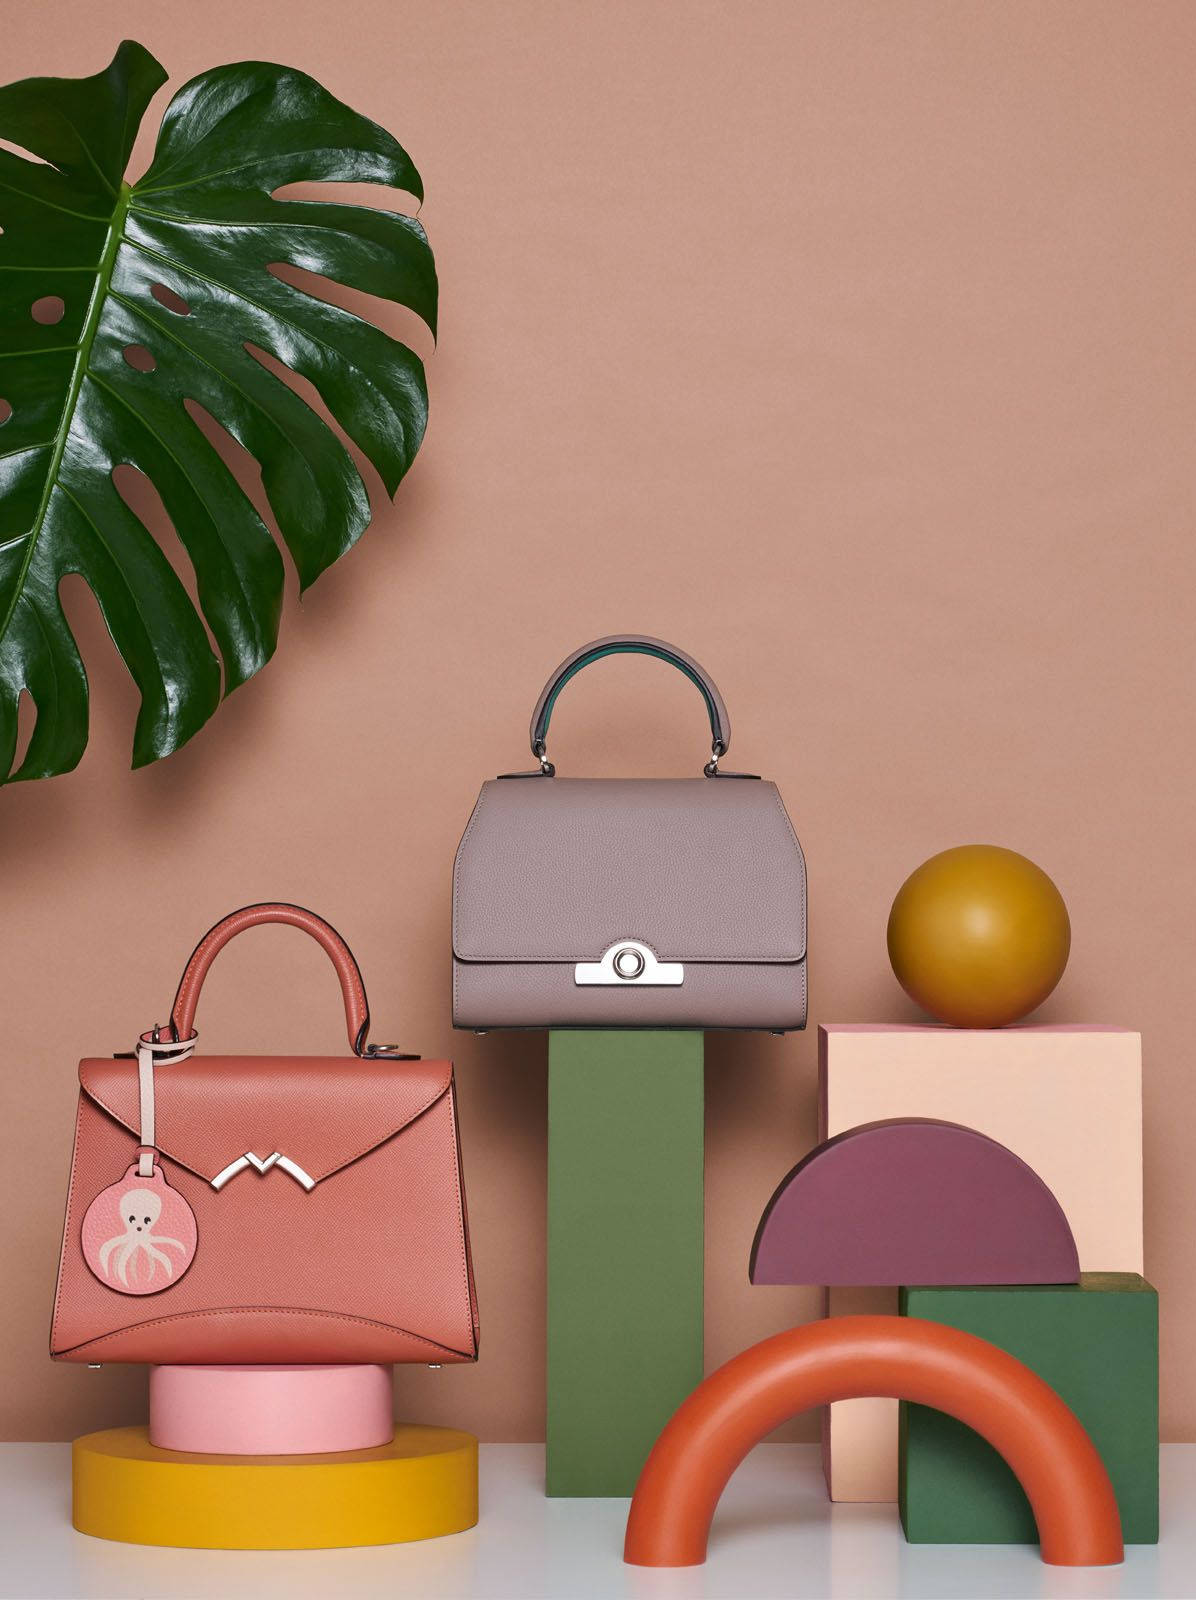 Moynat Paris - Gabrielle Clutch Handbag - Green - in Leather - Luxury